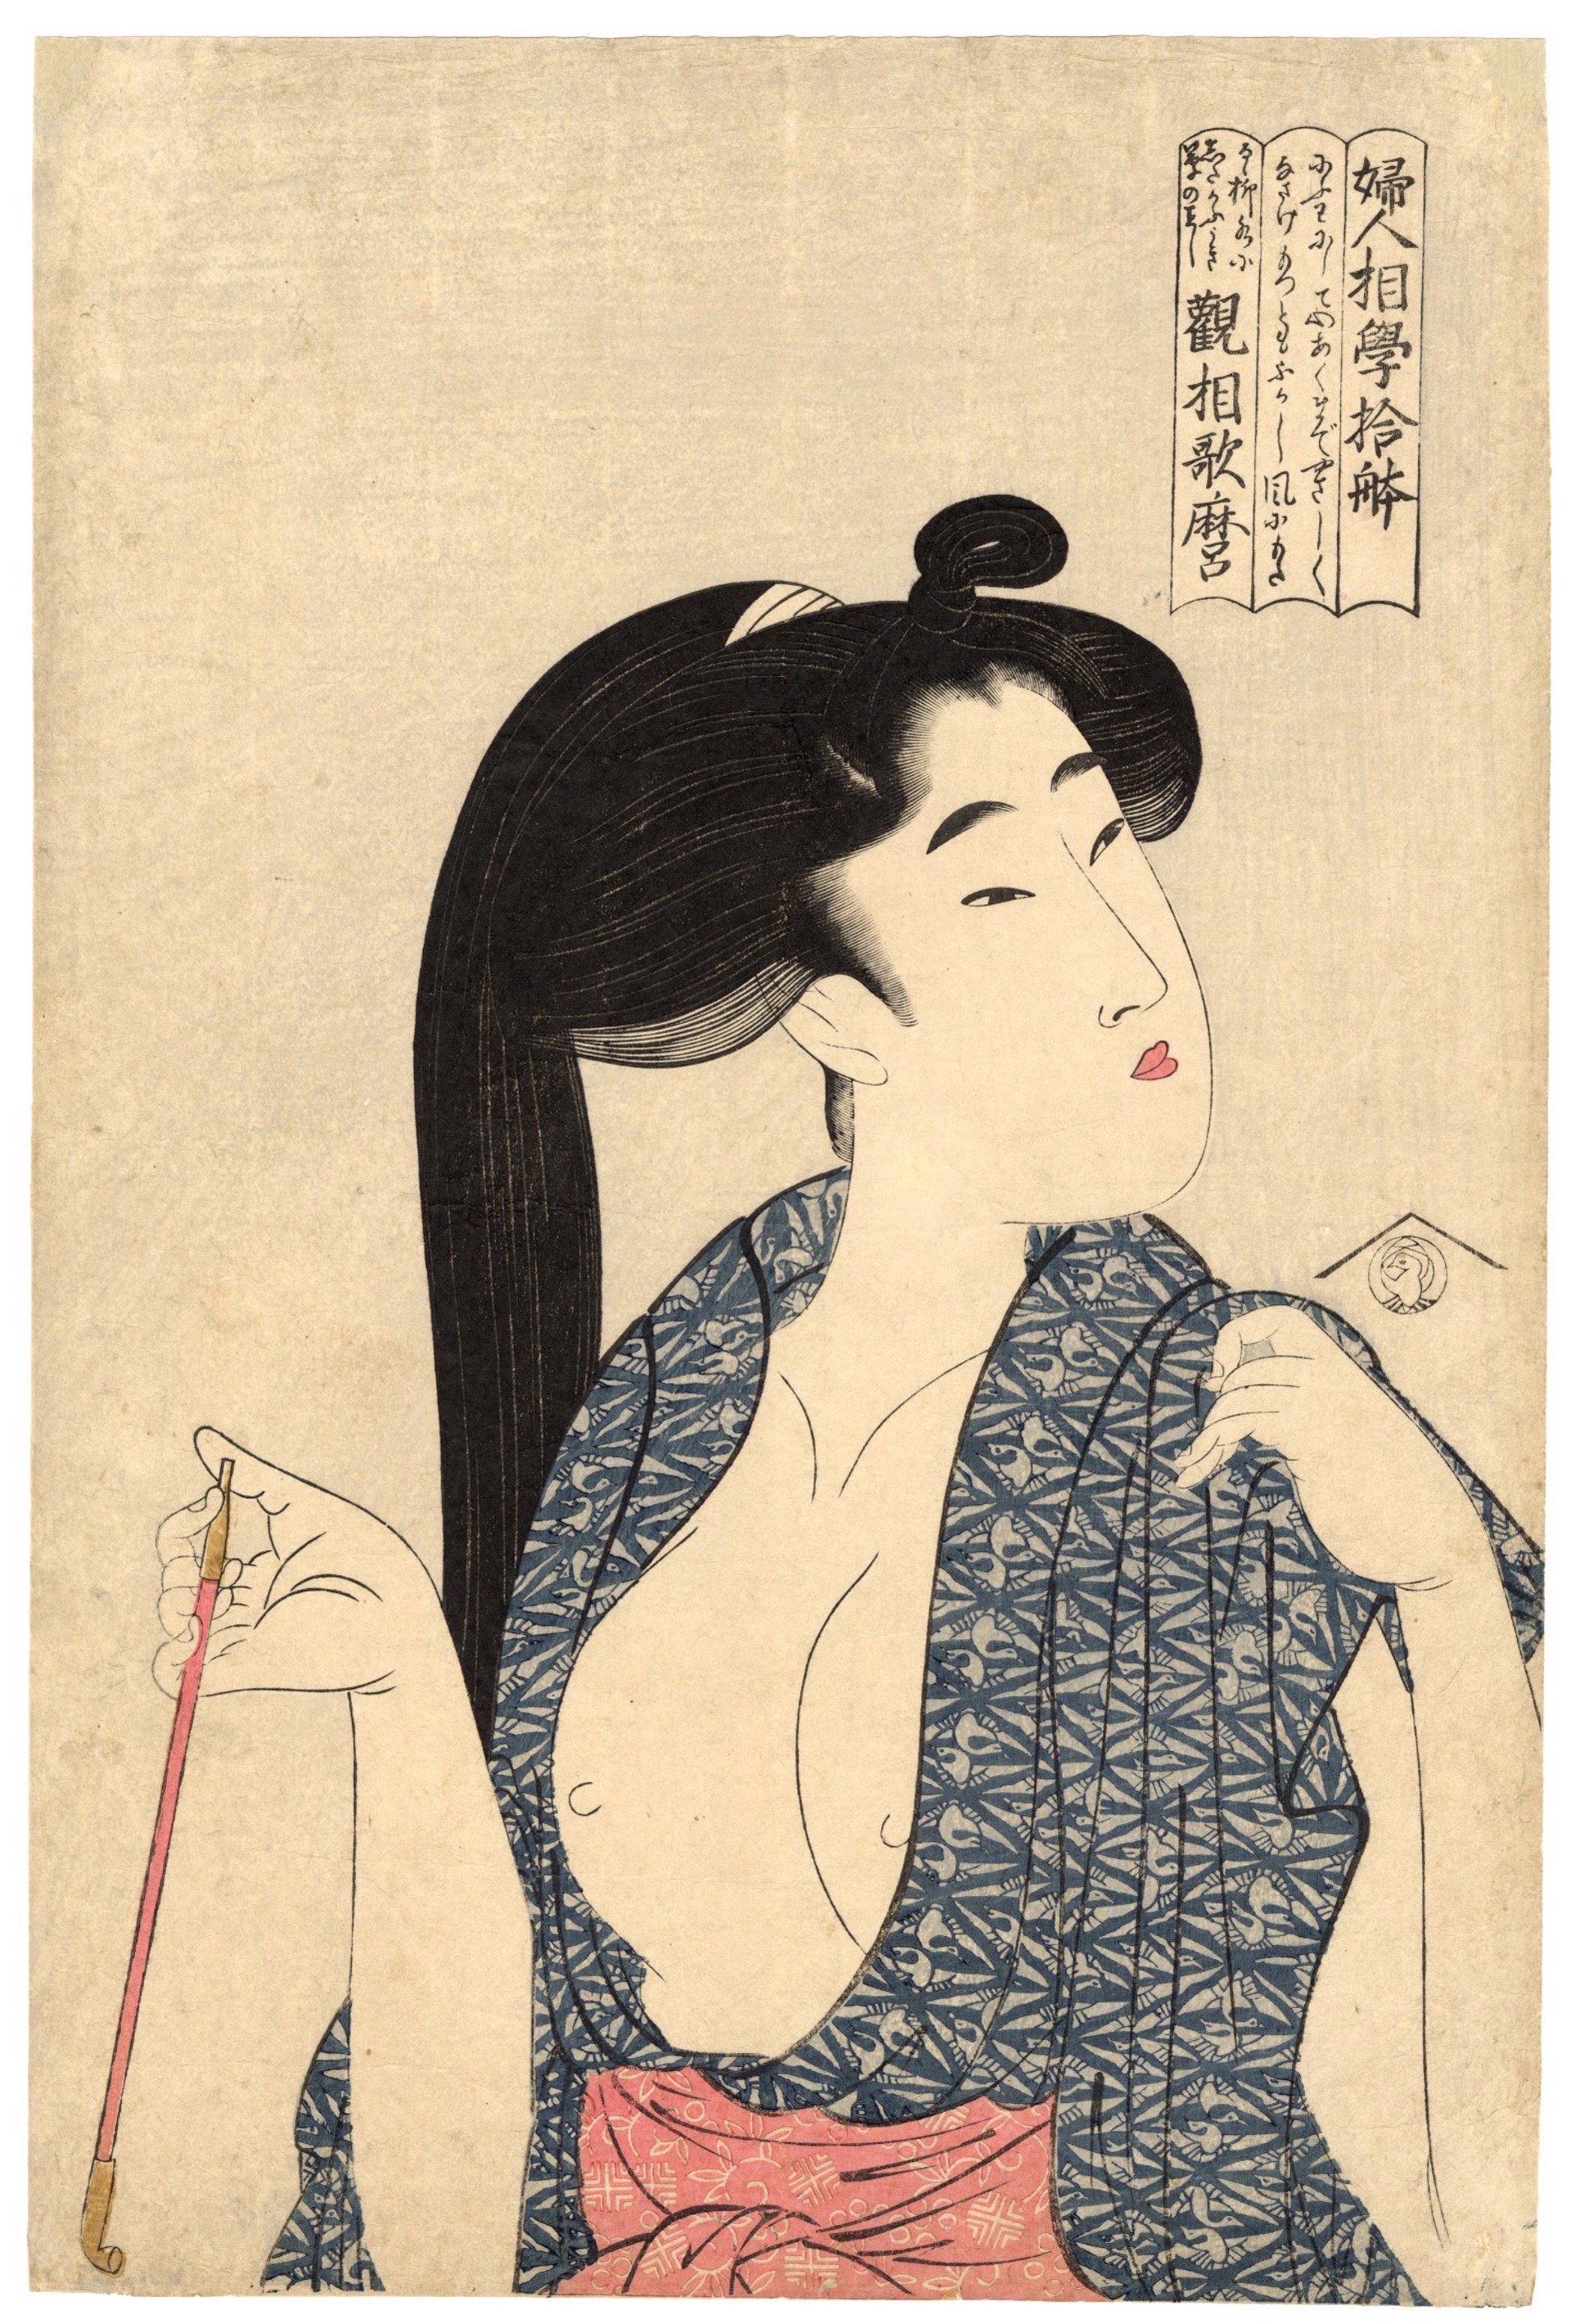 Kiseru (Pipe) by Utamaro